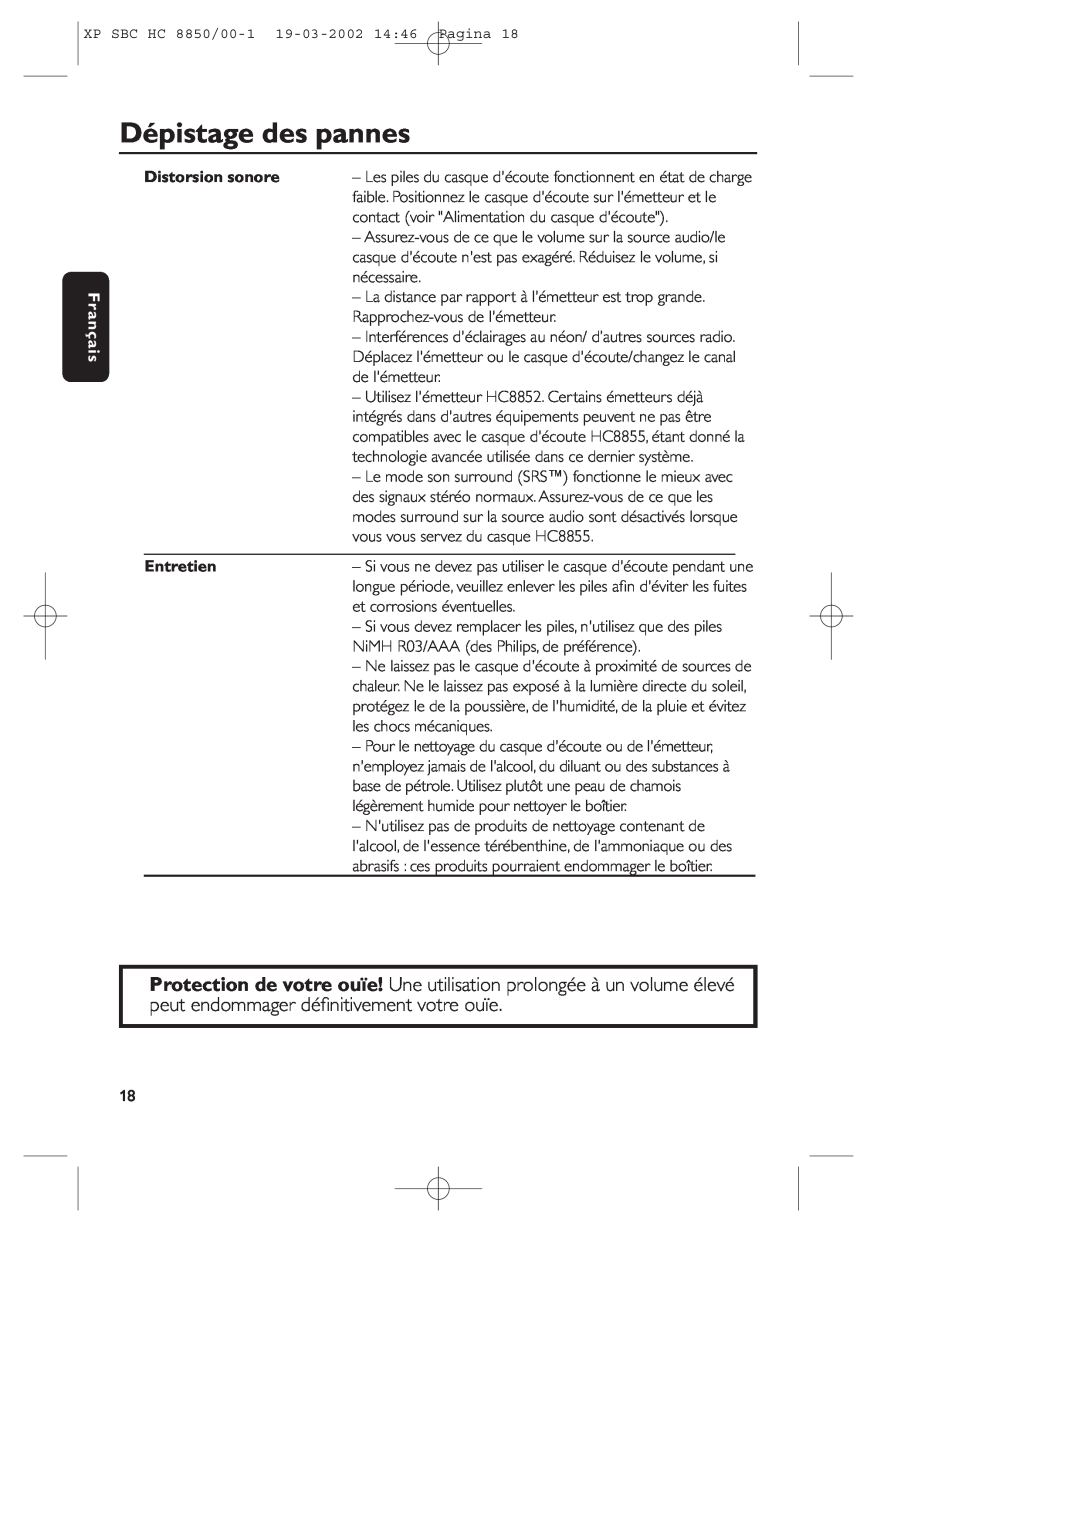 Philips HC8850 manual Dépistage des pannes, Français, Distorsion sonore, Entretien 